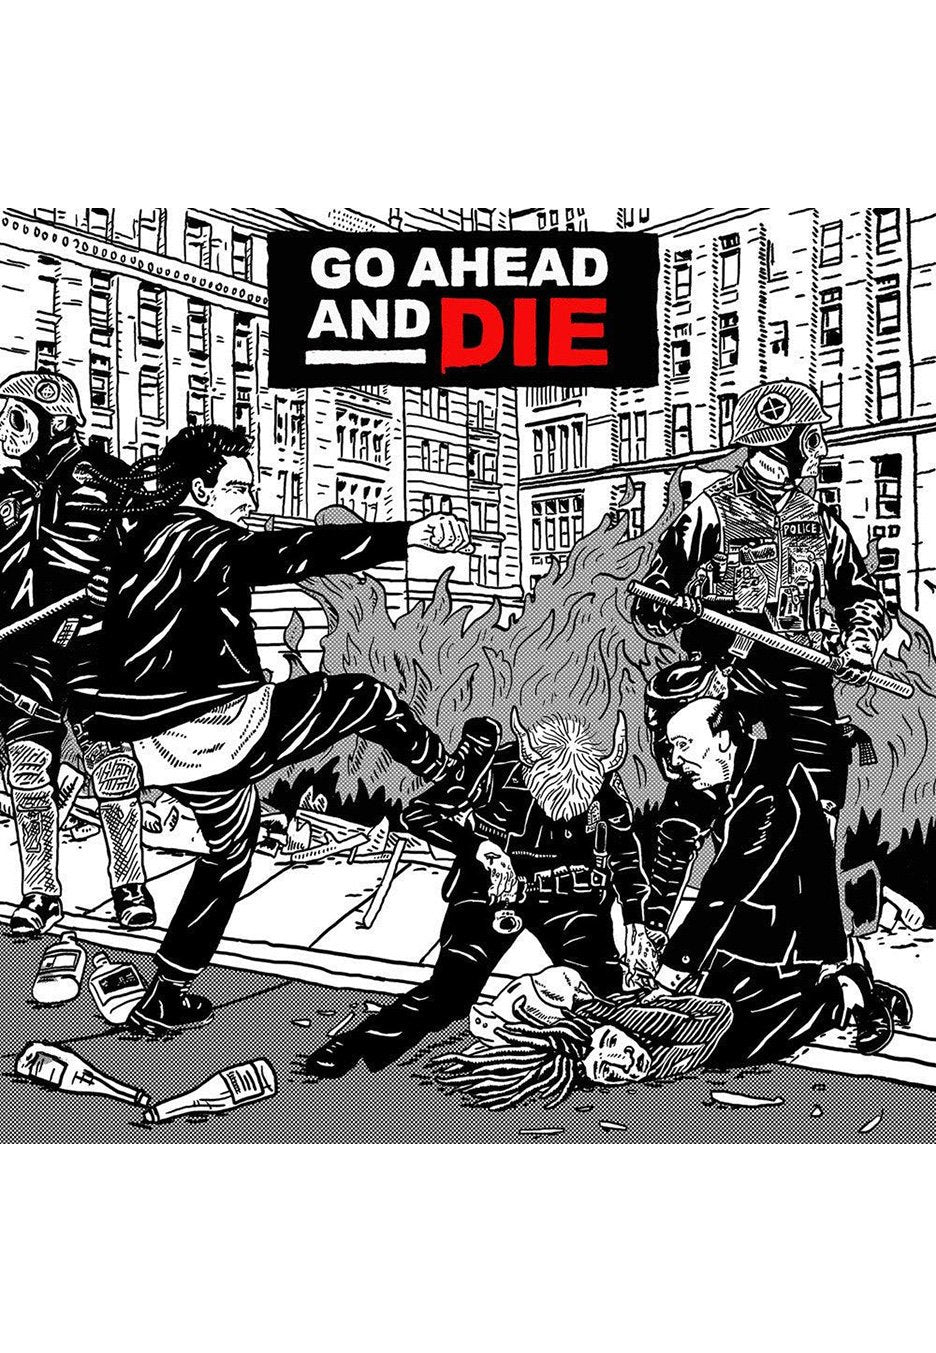 Go Ahead And Die - Go Ahead And Die - Vinyl